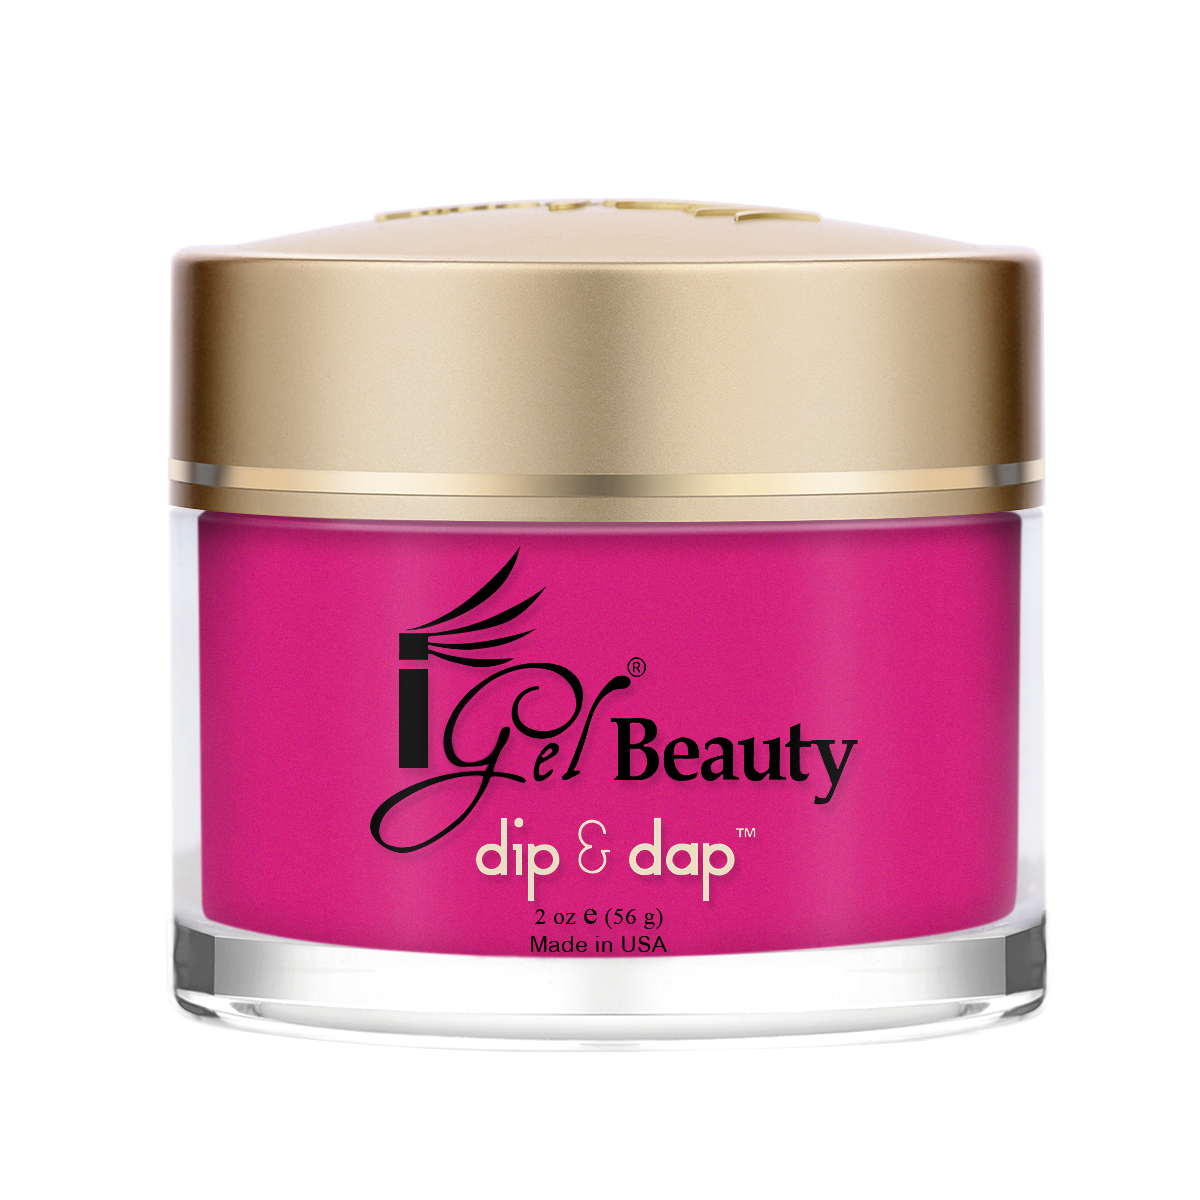 DD311 Tropical Royalty Dip and Dap Powder 2oz By IGel Beauty